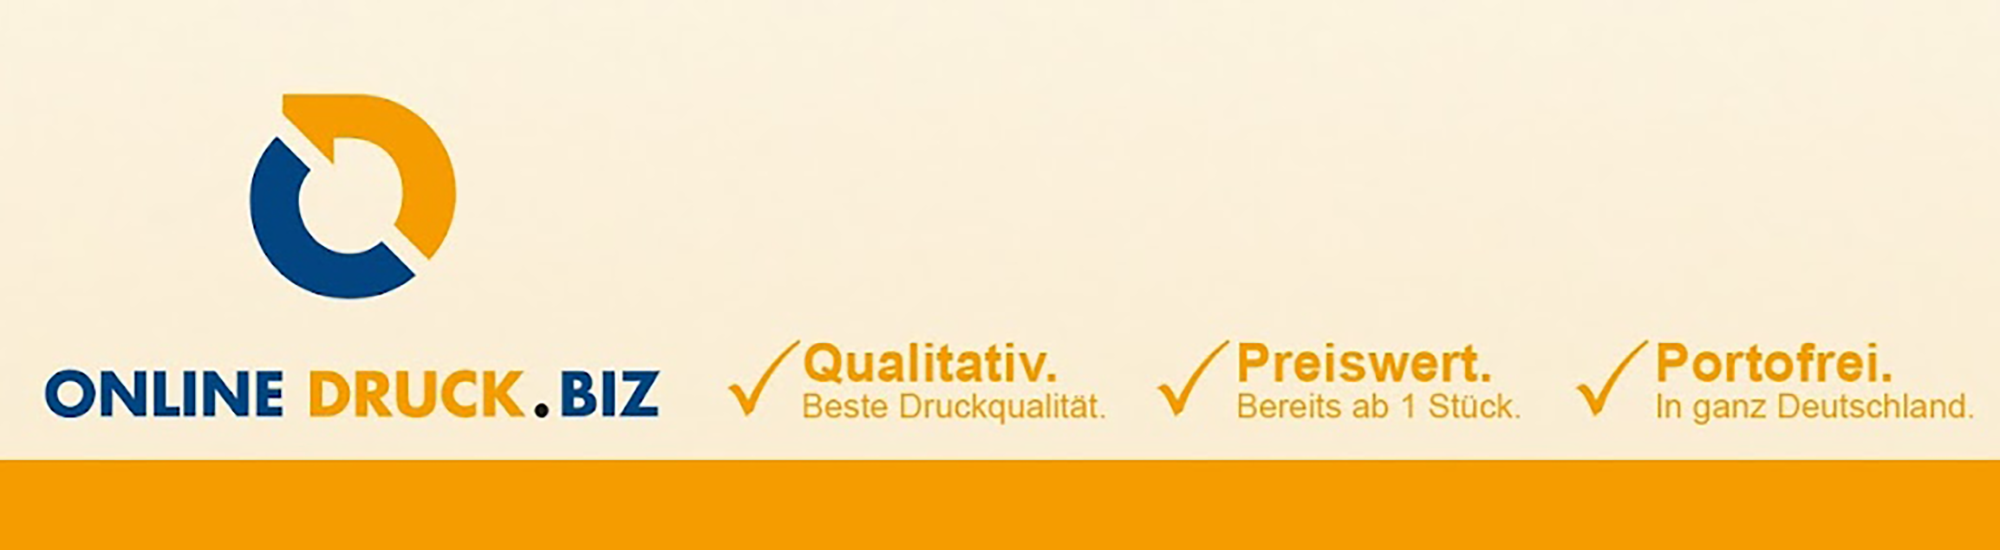 Online-Druck GmbH & Co. KG